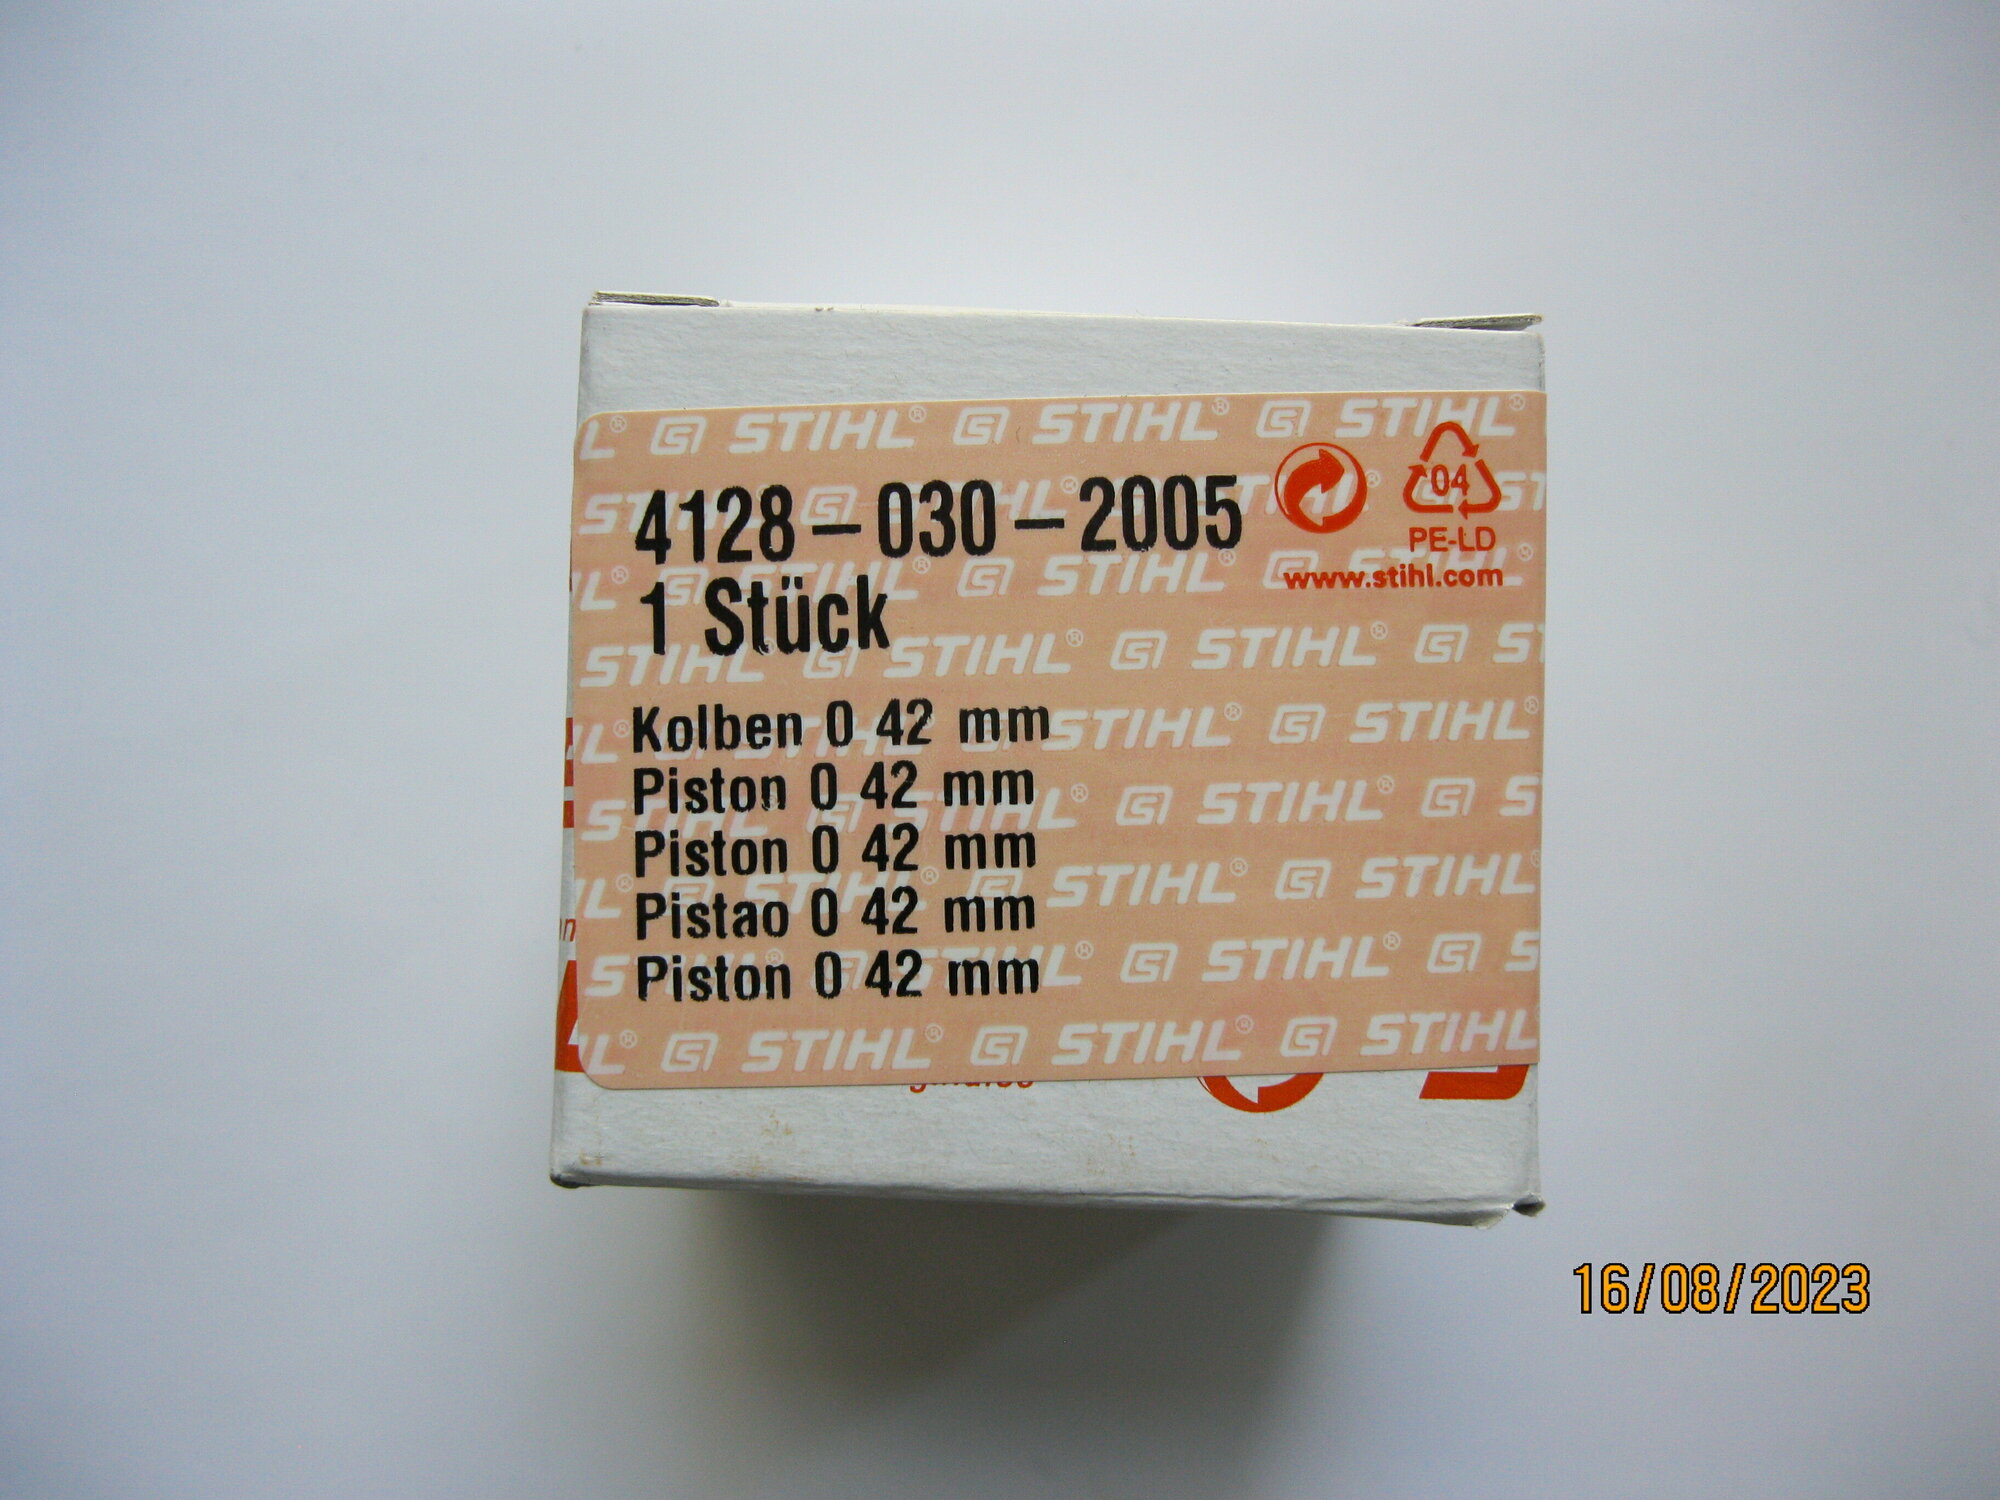 Поршень STIHL FS 450 (42 мм) артикул 4128 030 2005